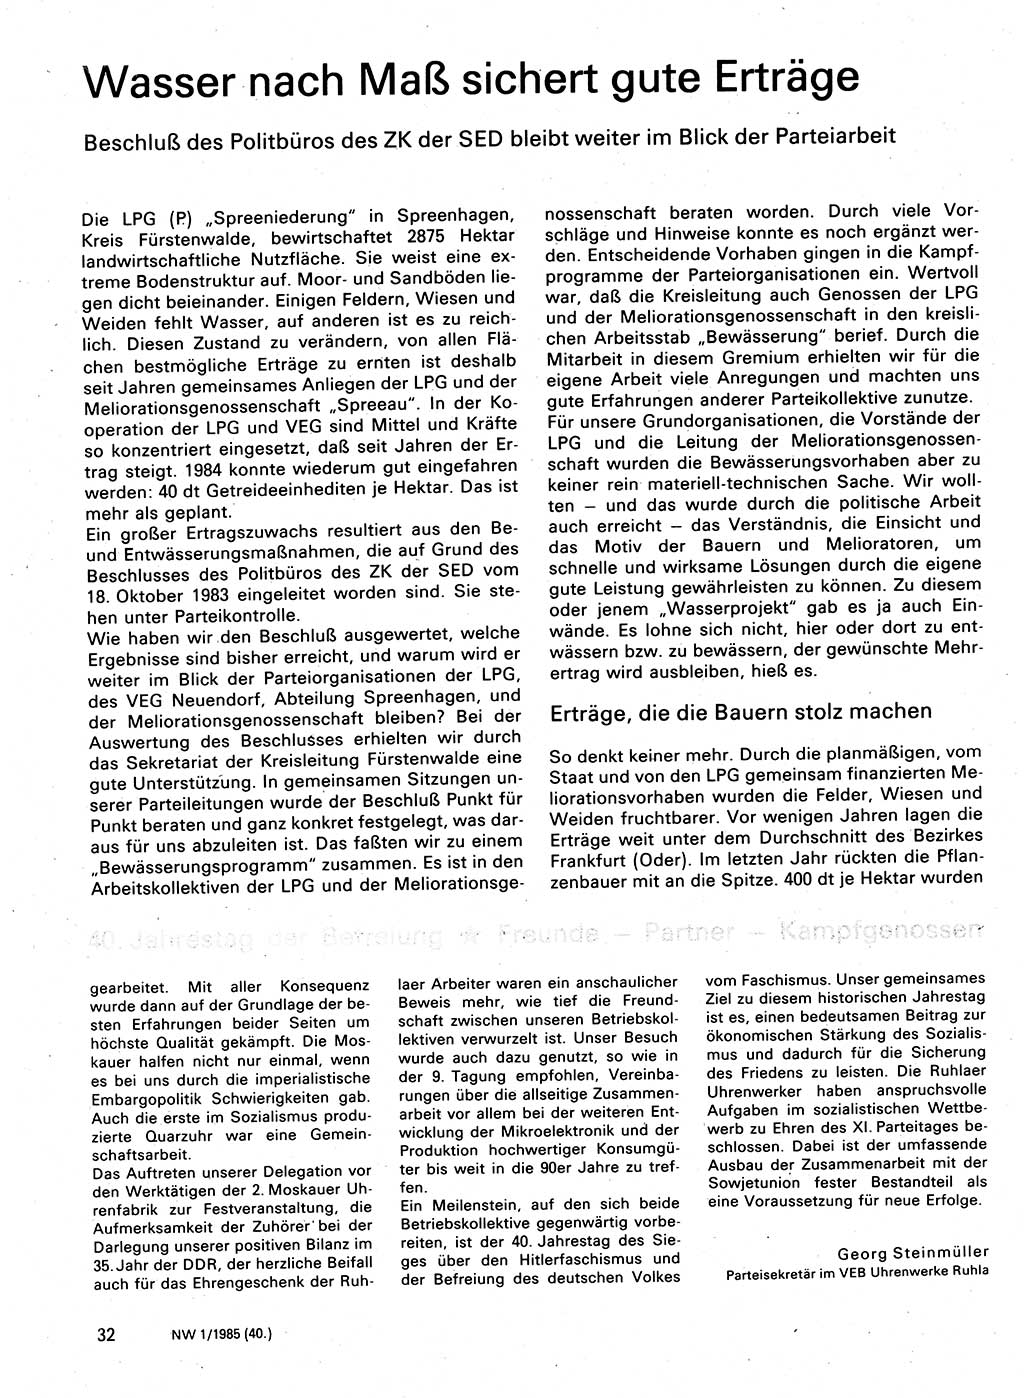 Neuer Weg (NW), Organ des Zentralkomitees (ZK) der SED (Sozialistische Einheitspartei Deutschlands) für Fragen des Parteilebens, 40. Jahrgang [Deutsche Demokratische Republik (DDR)] 1985, Seite 32 (NW ZK SED DDR 1985, S. 32)